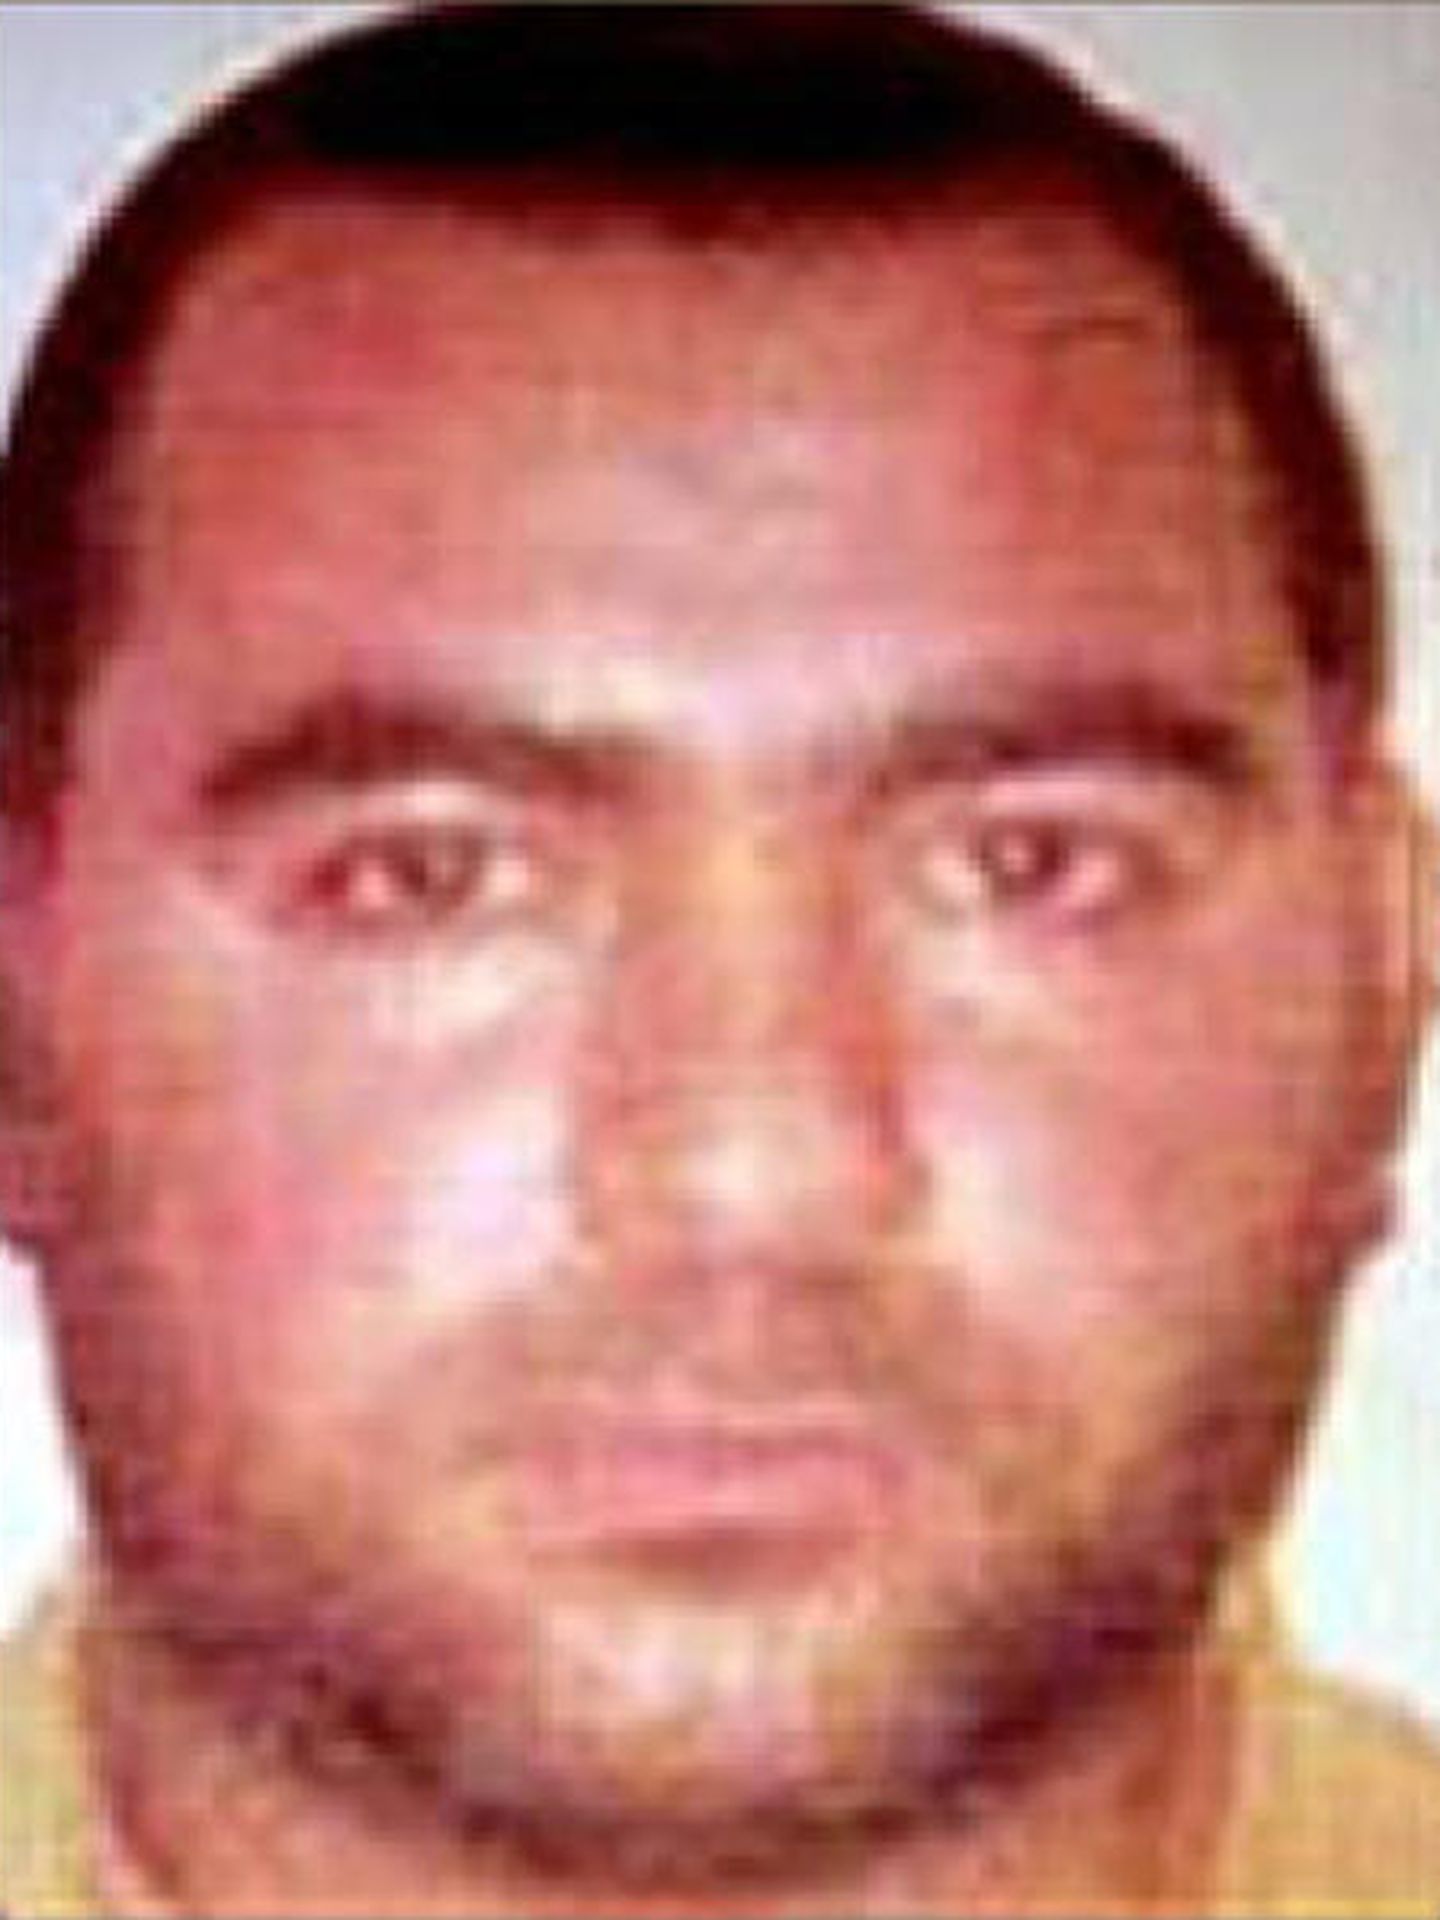 Imagen facilitada por el departamento de defensa de Estados Unidos de Abu Bakr al-Baghdadi (REUTERS)